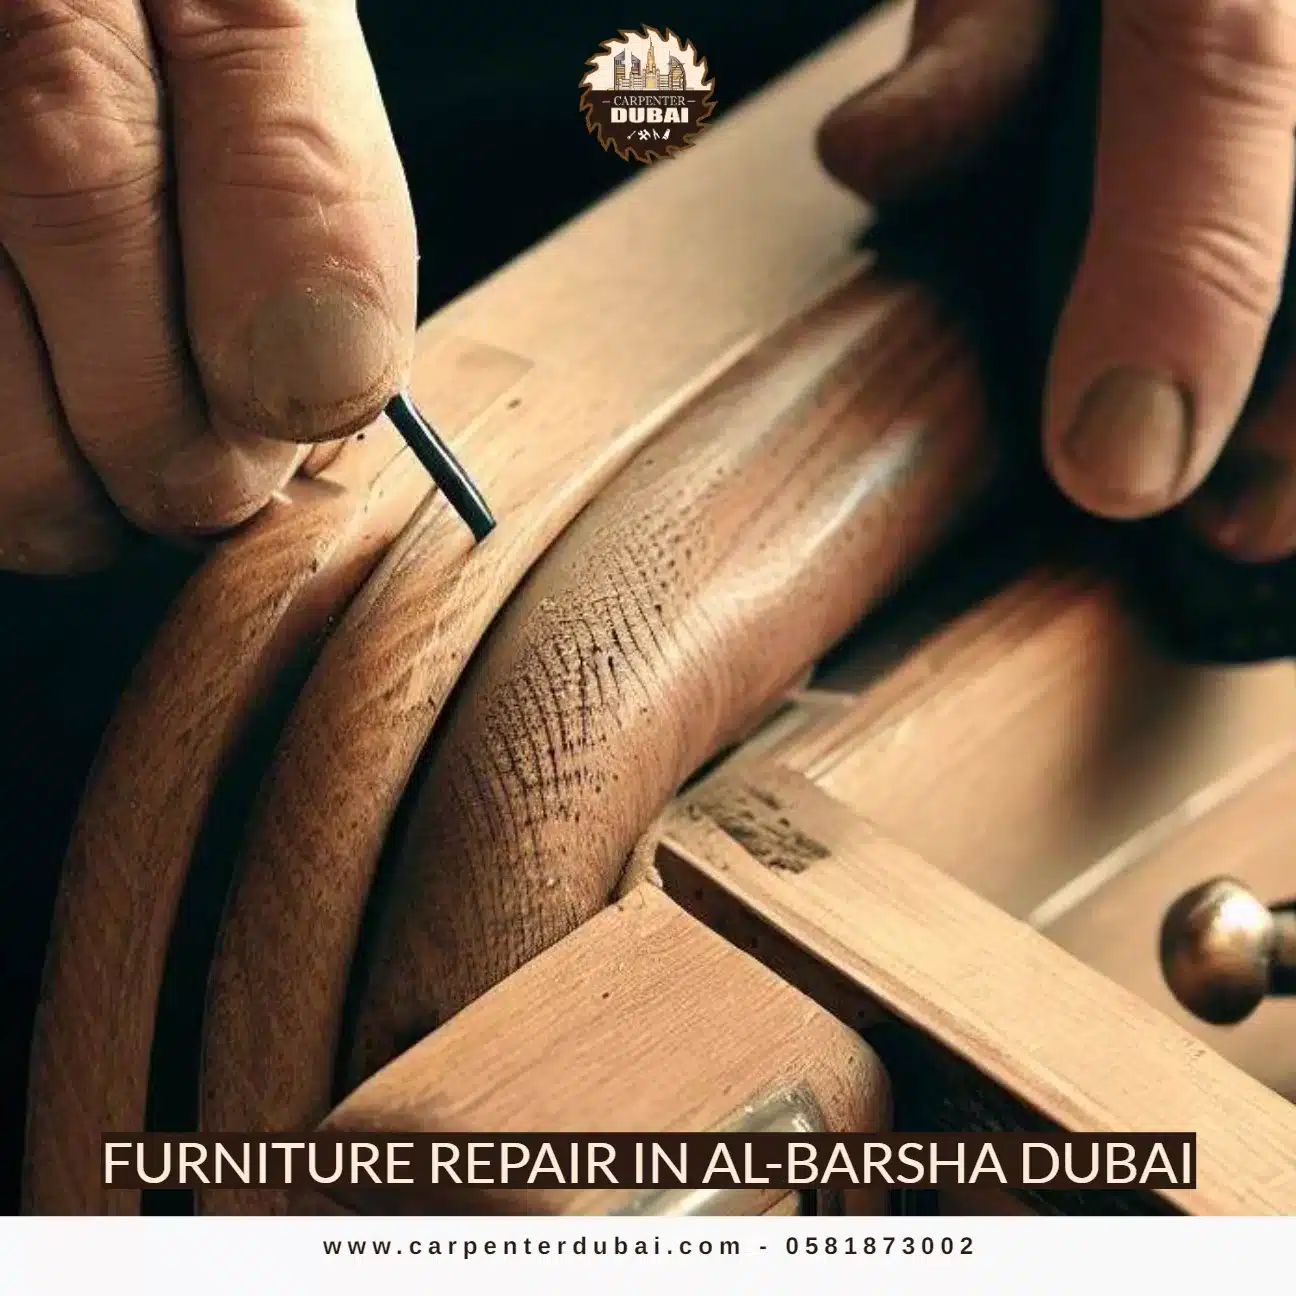 Furniture Repair in Al-Barsha Dubai